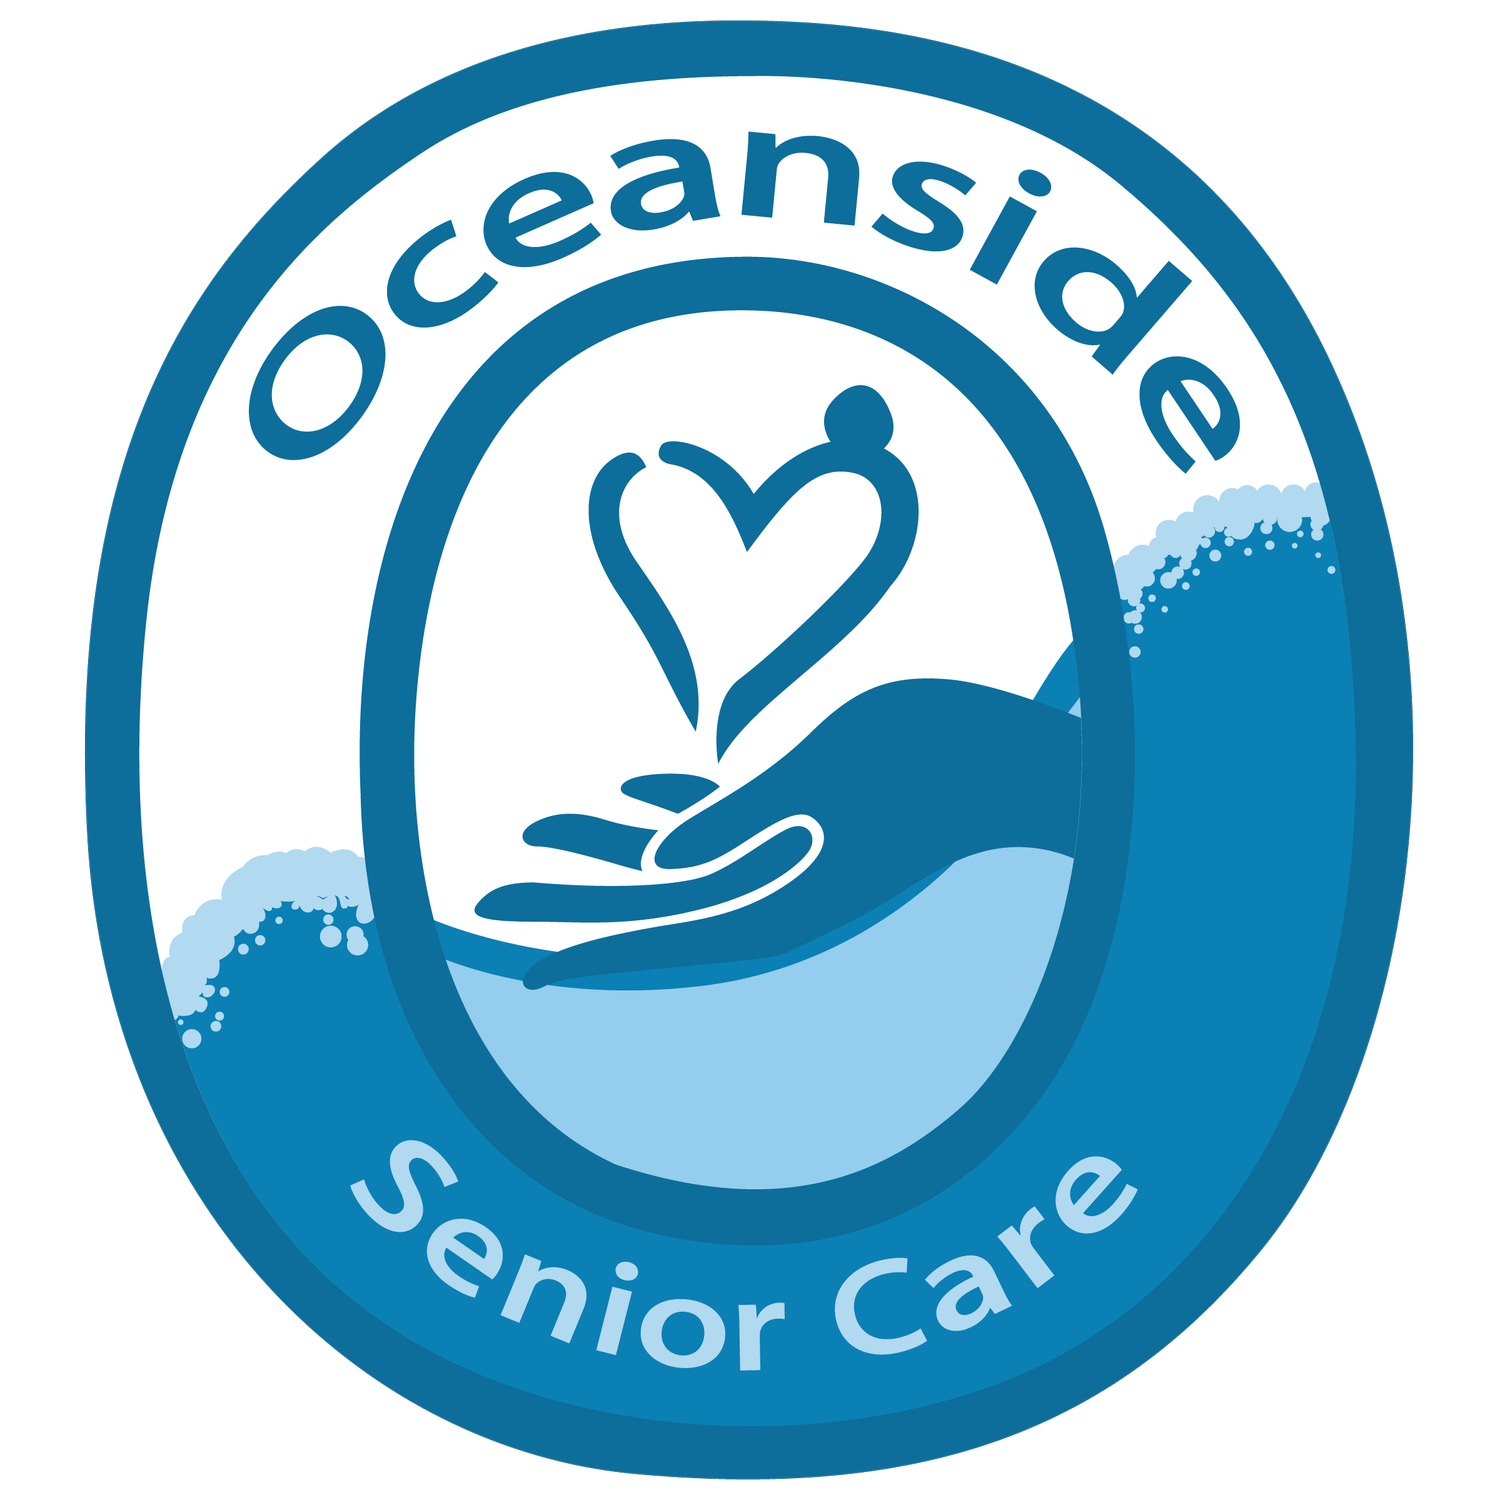 Oceanside Senior Care